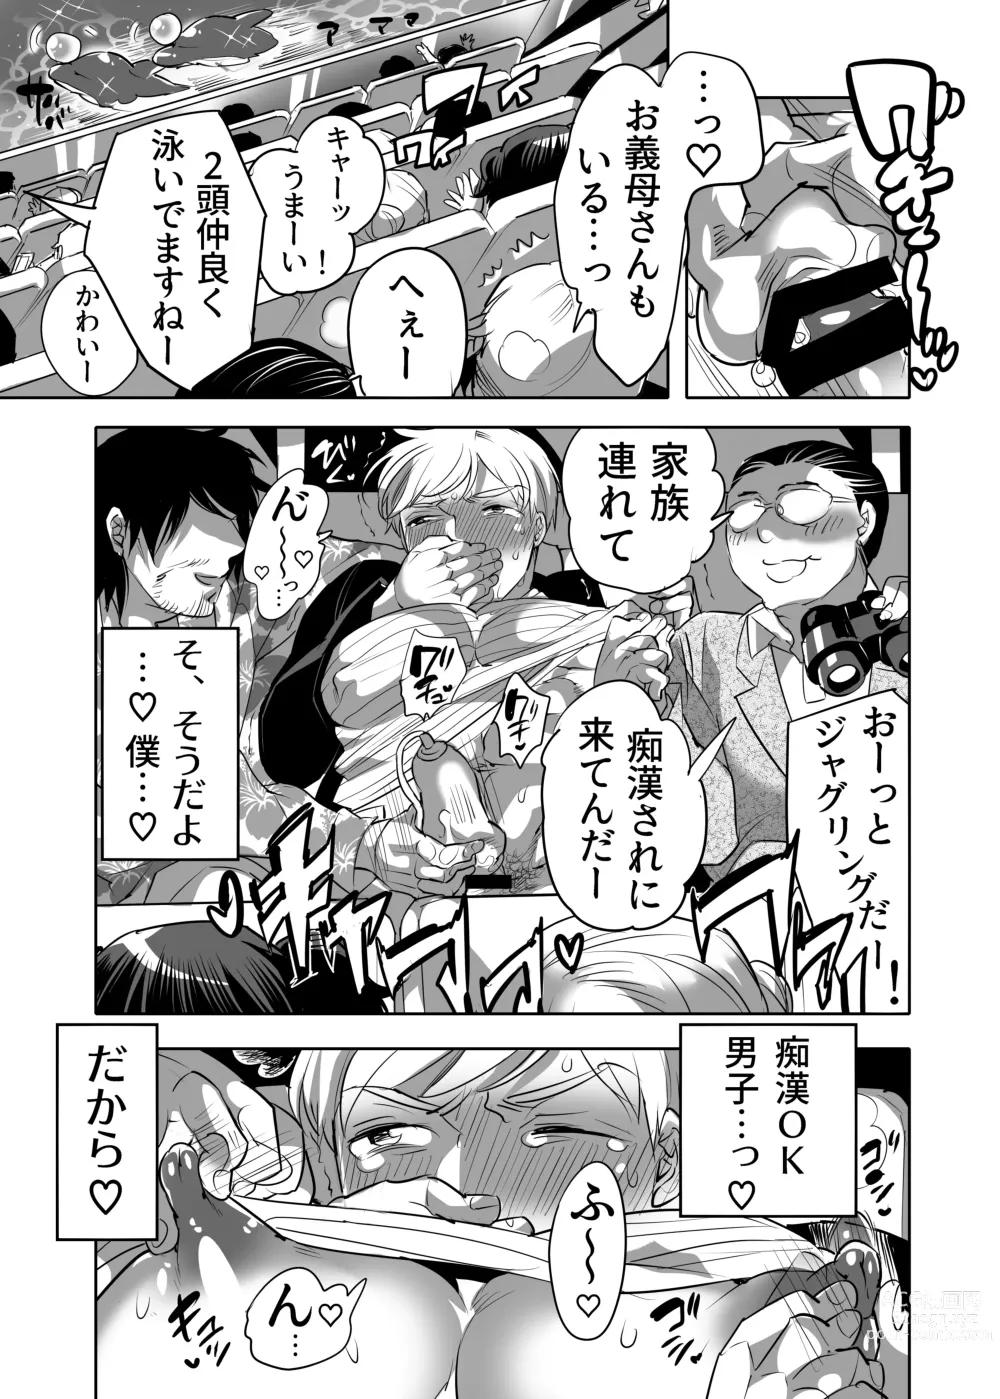 Page 9 of manga Abuso OK Prisionero Niño